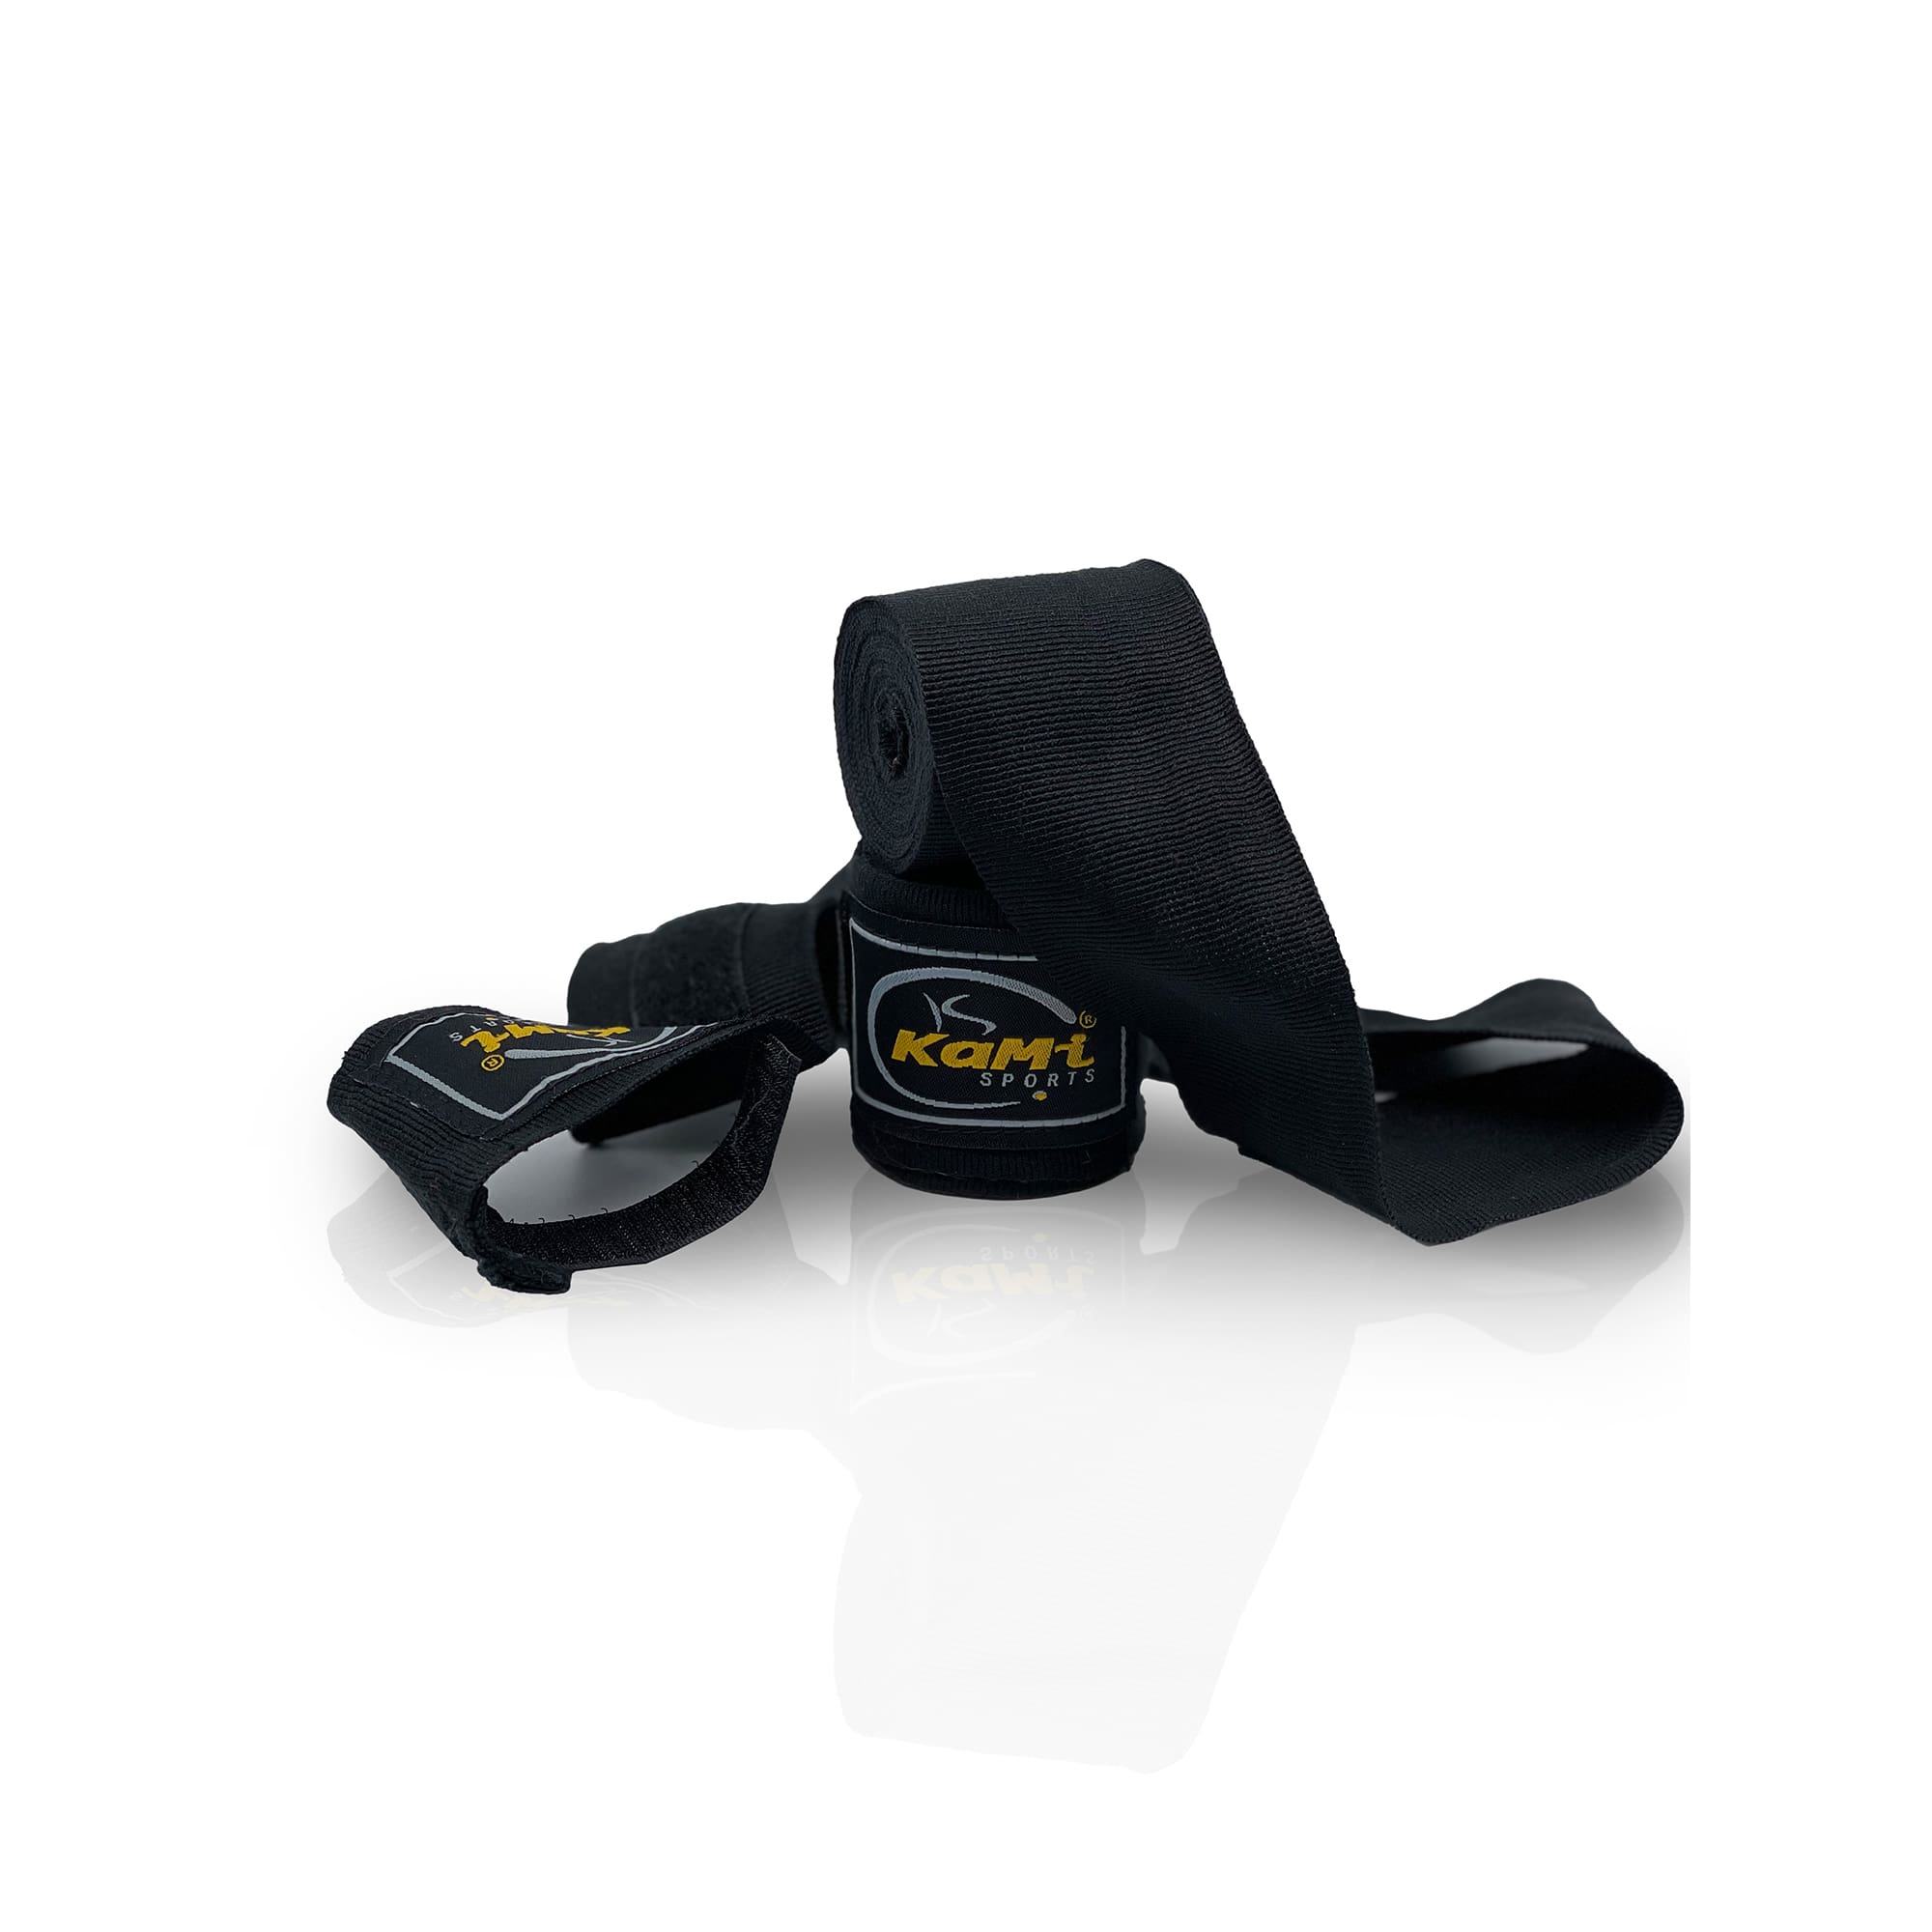 Produktansicht der schwarzen Boxbandage, speziell konzipiert zur Unterstützung und zum Schutz der Hände und Handgelenke im Kampfsport. Hochwertiges Material sorgt für Langlebigkeit und Komfort, während das flexible Design eine individuelle Passform ermöglicht.